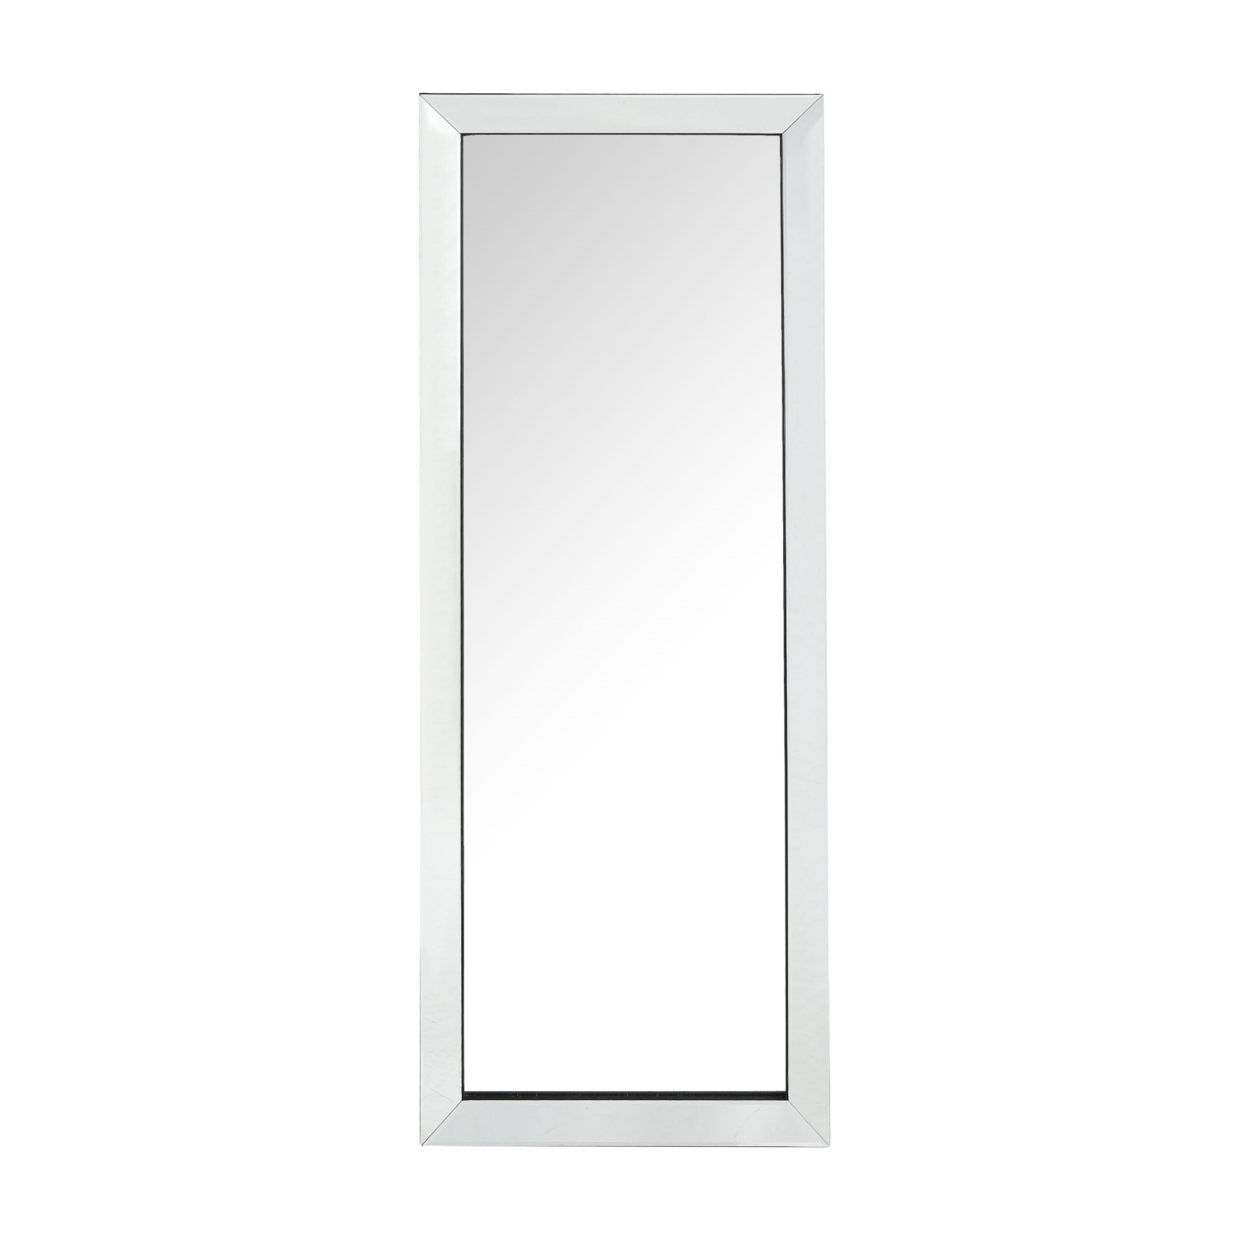 Kiara Full Length Mirror - Floor Standing Vanity Mirrored Frame Foldable Inspired Home